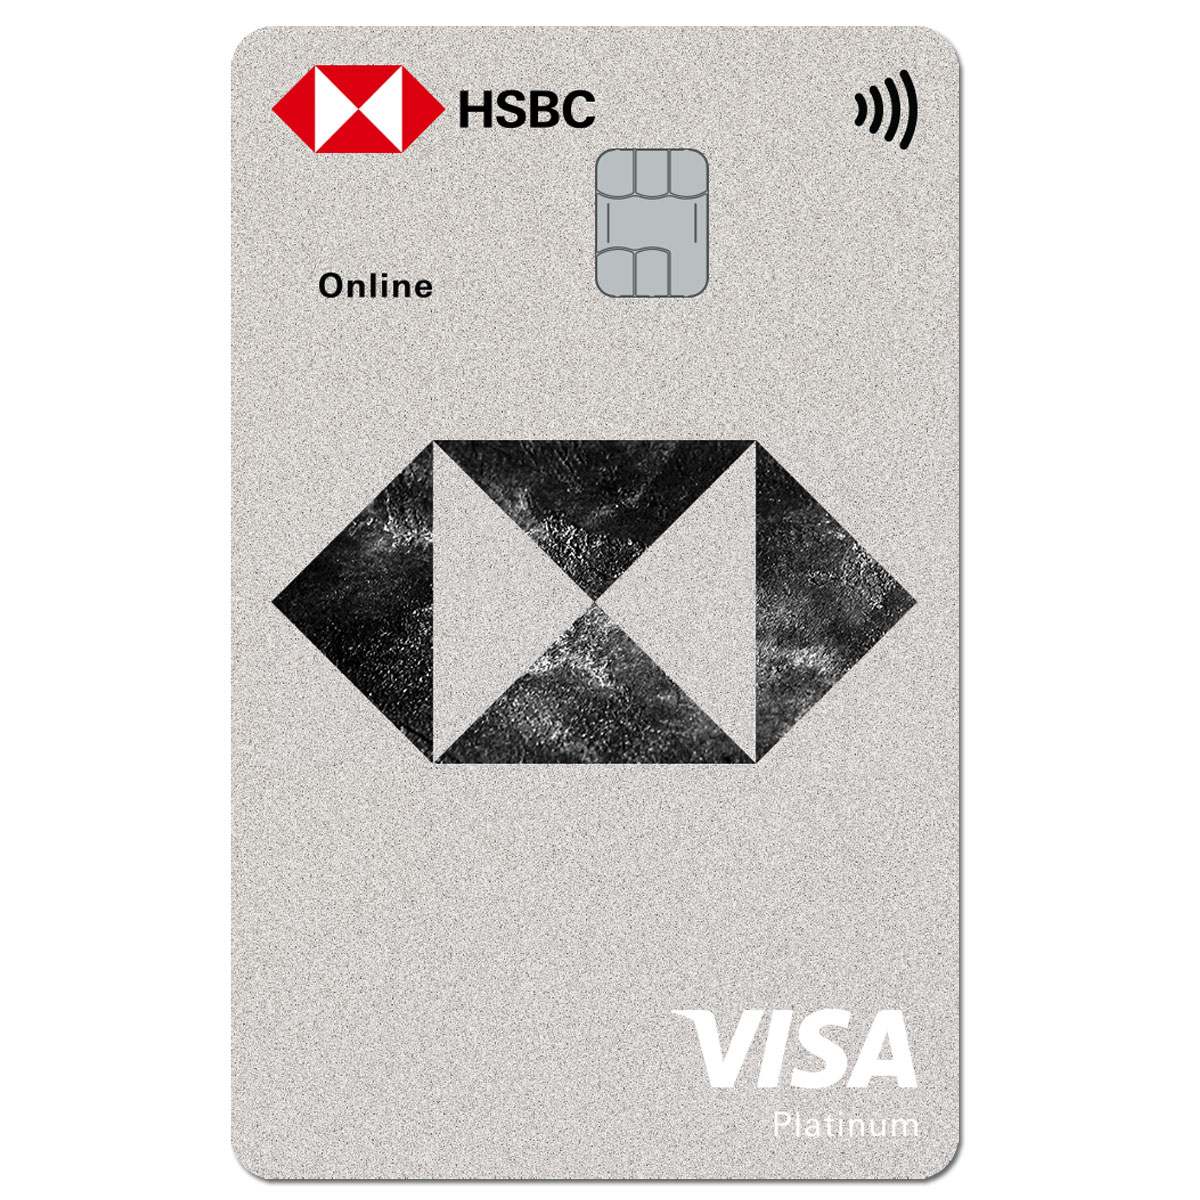 Visa Bạch Kim - thẻ tín dụng đỉnh cao của các thẻ tín dụng. Với tiêu chuẩn an toàn cao cùng nhiều ưu đãi hấp dẫn, thẻ Visa Bạch Kim đem đến cho bạn trải nghiệm tài chính tuyệt vời. Hãy cùng xem hình ảnh liên quan để trải nghiệm những tính năng tuyệt vời của thẻ này.